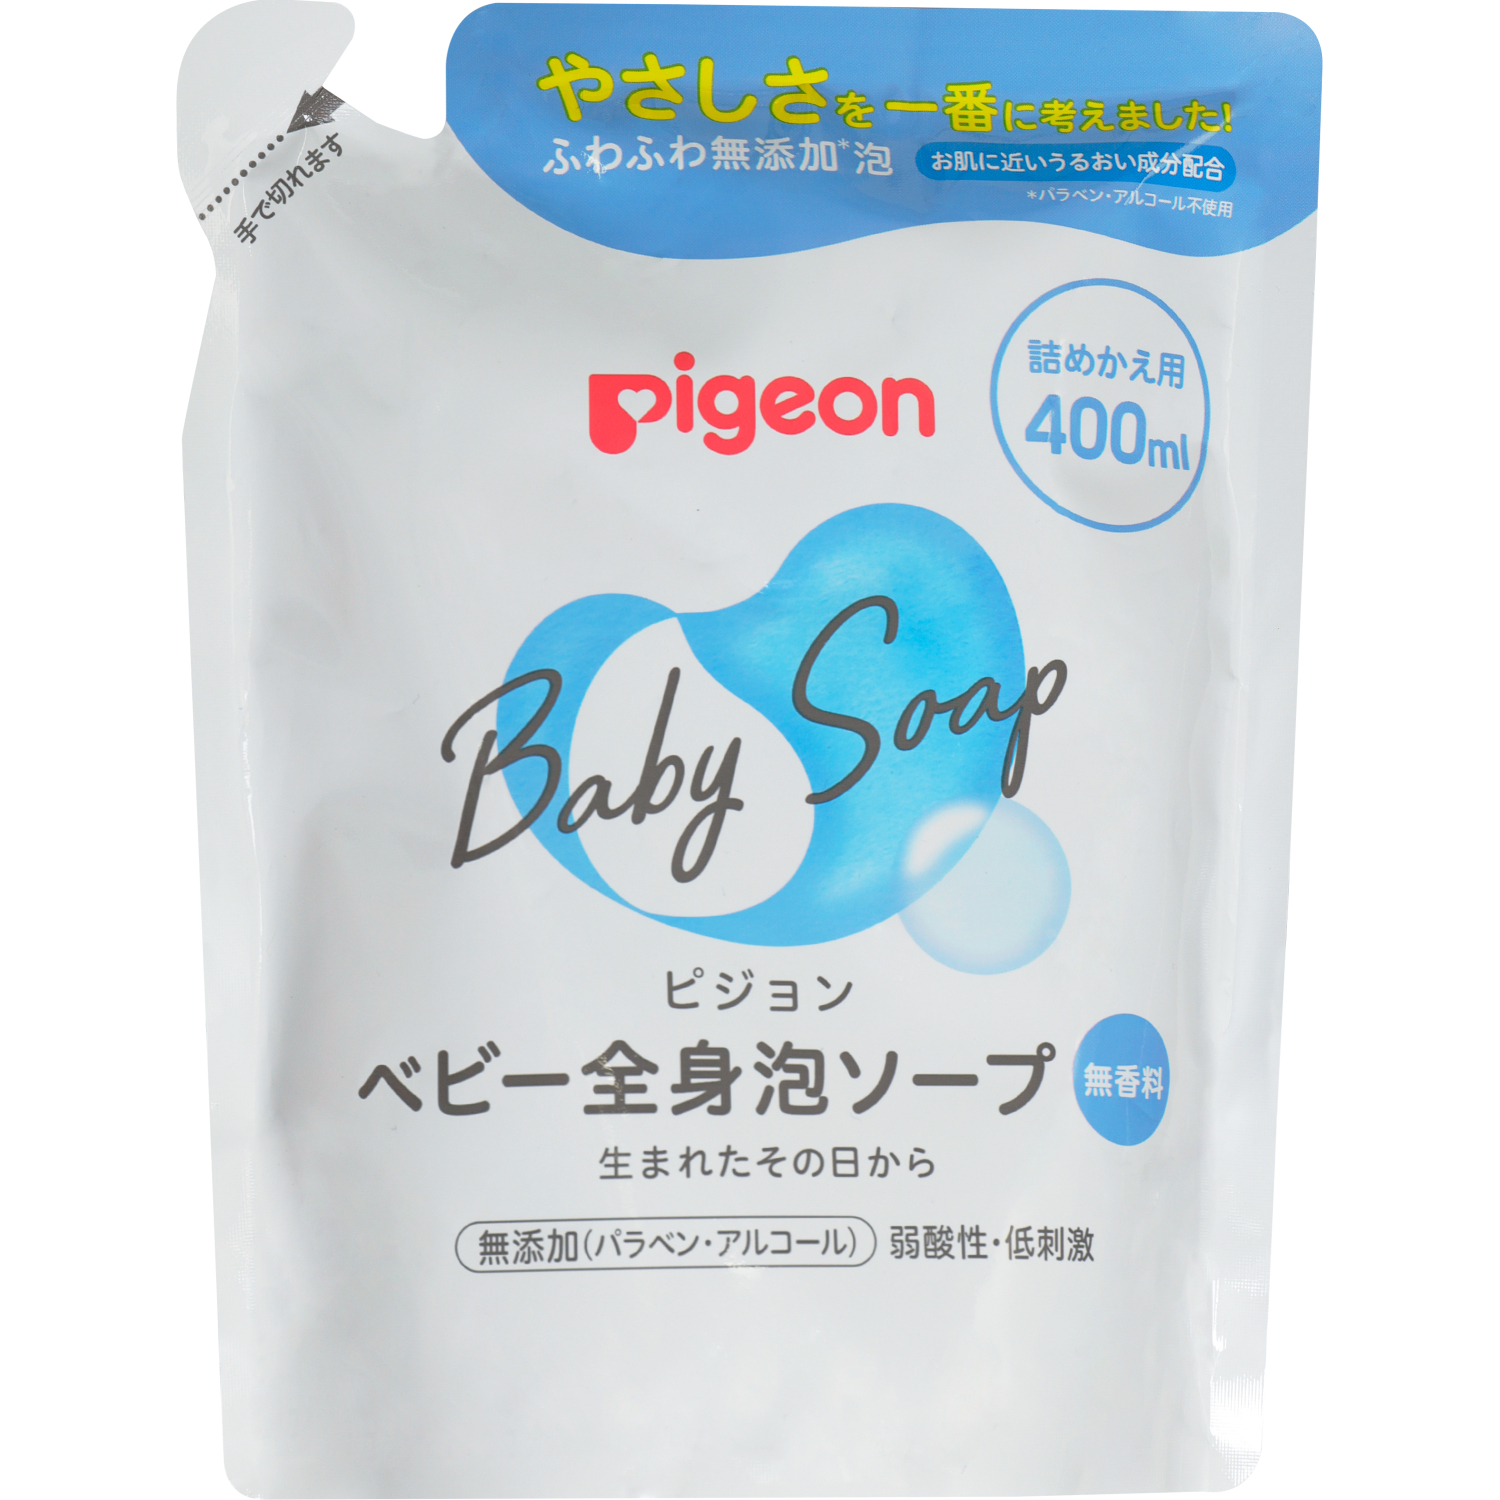 Мыло-пенка Pigeon для младенцев сменный блок 400 мл pigeon шампунь пенка для младенцев с рождения флакон дозатор 350мл